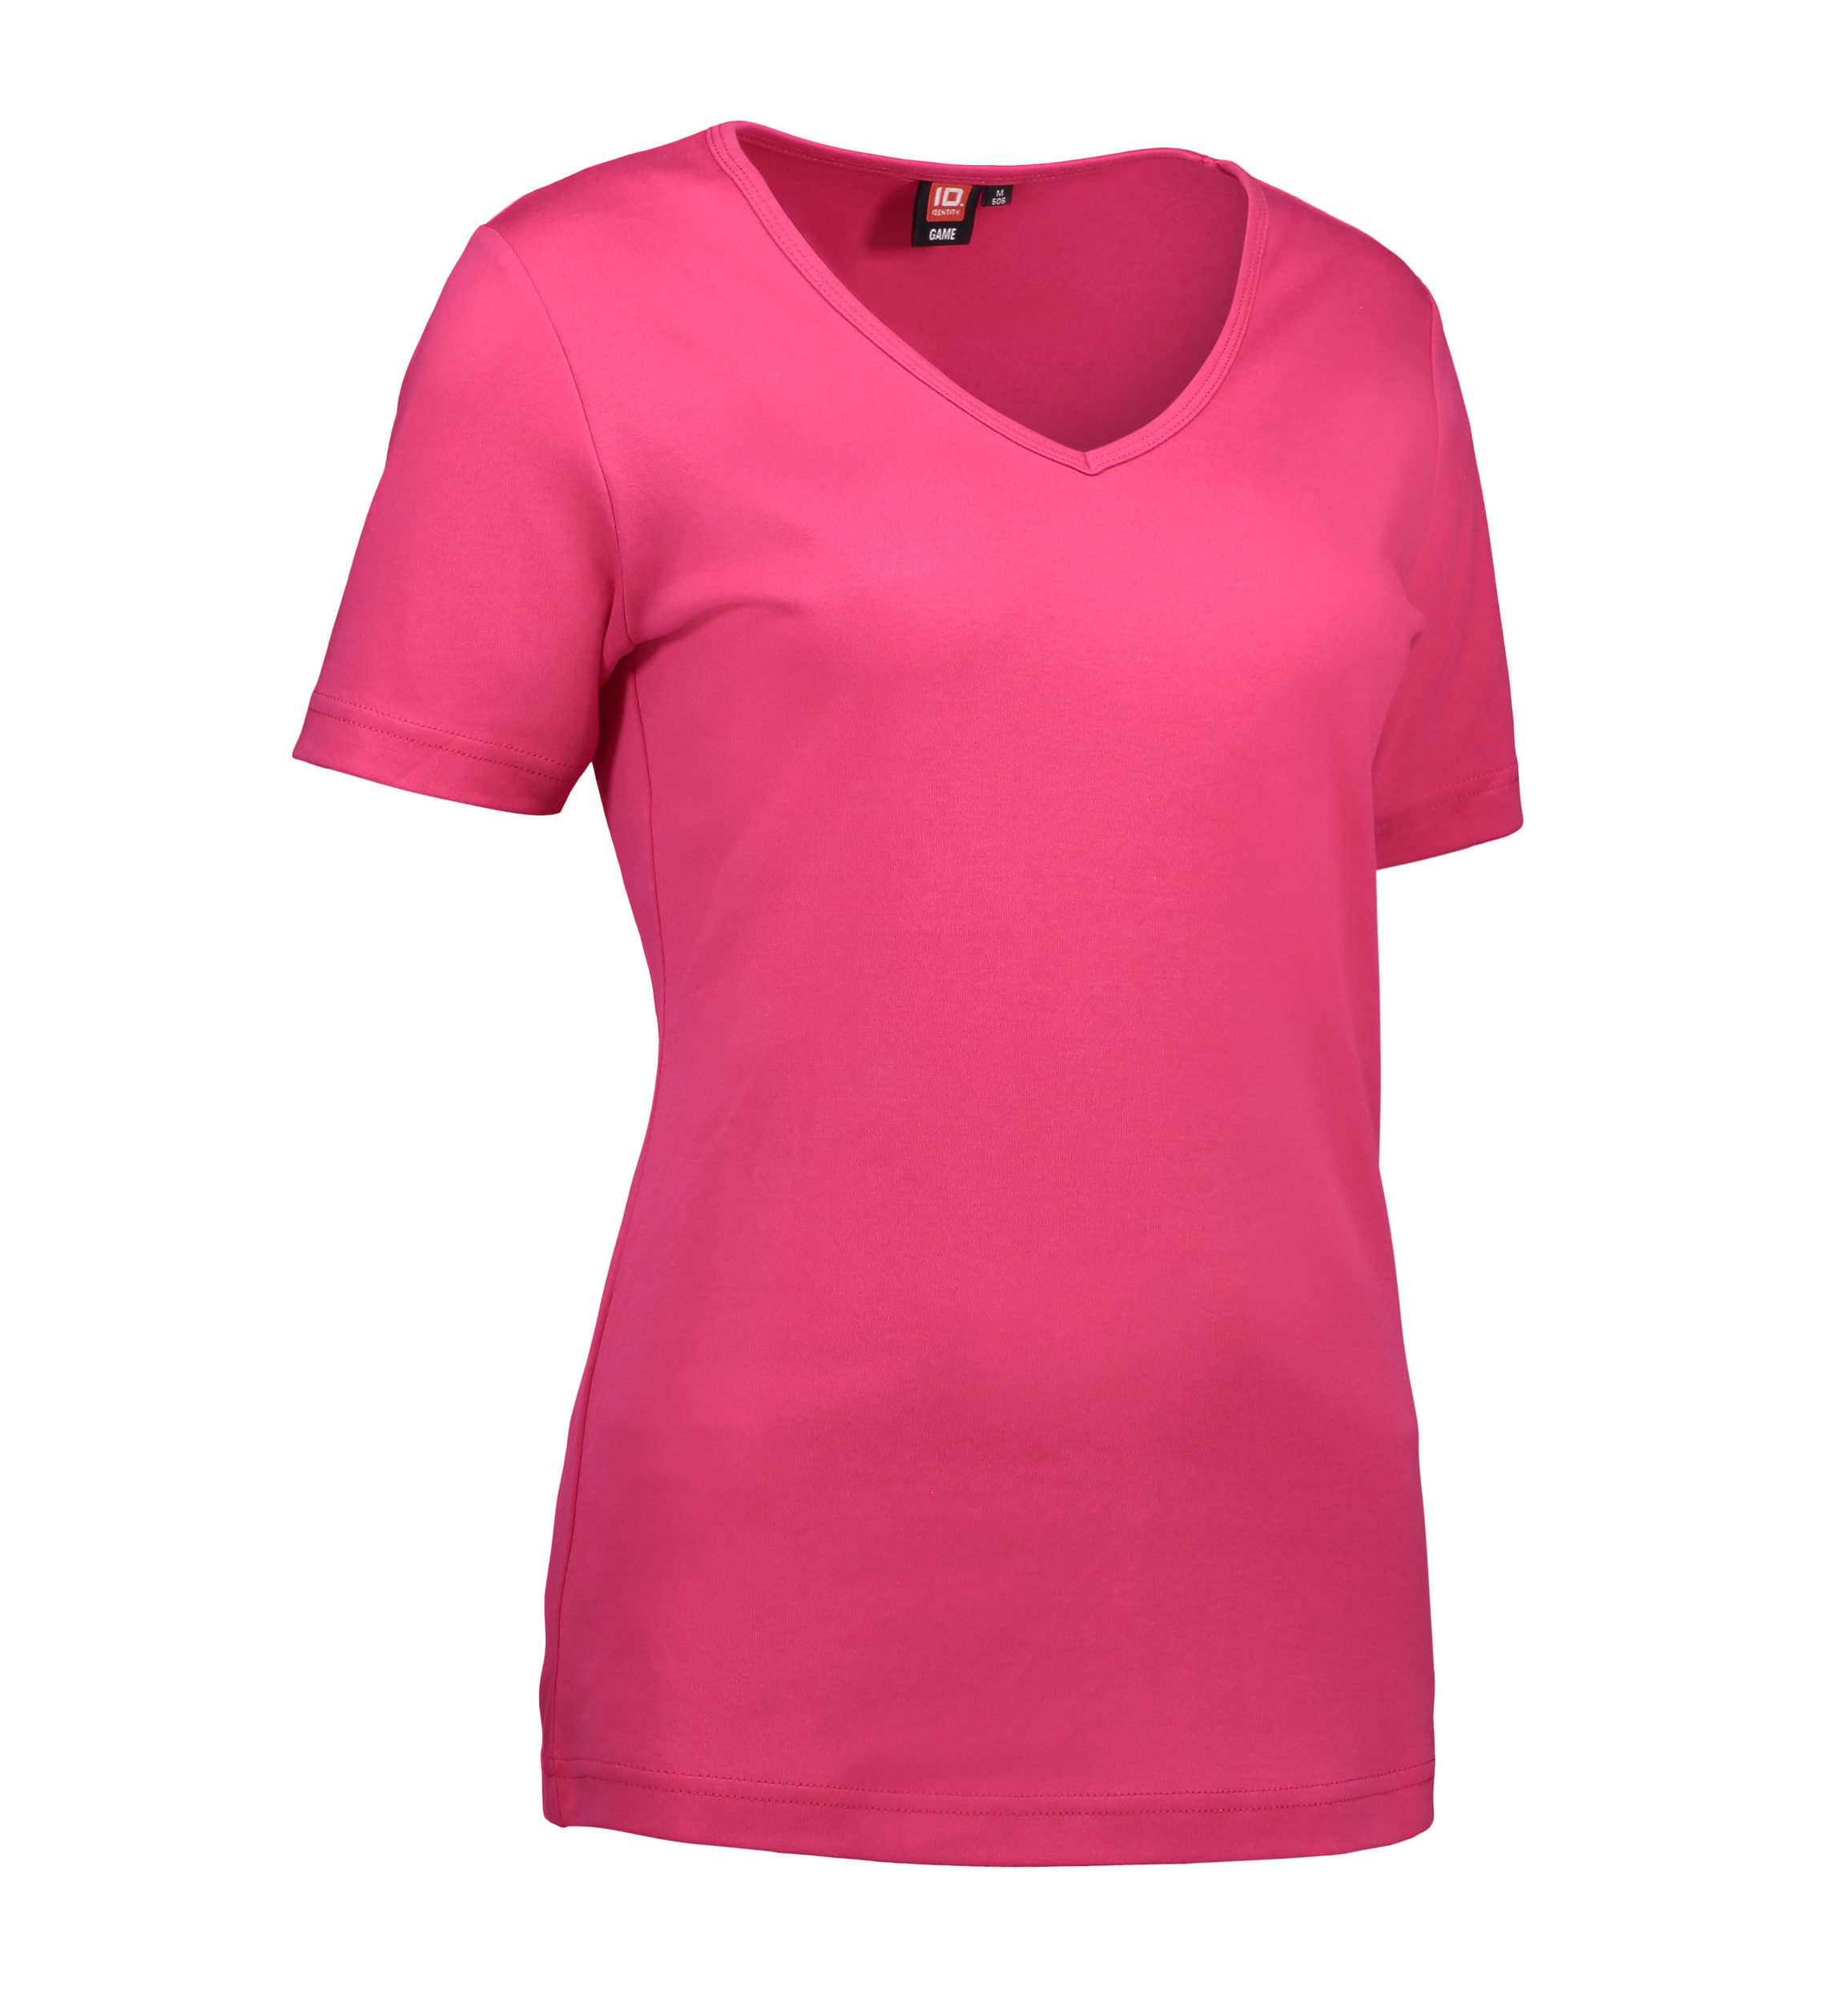 Billede af Pink dame t-shirt med v-hals - XL hos Sygeplejebutikken.dk